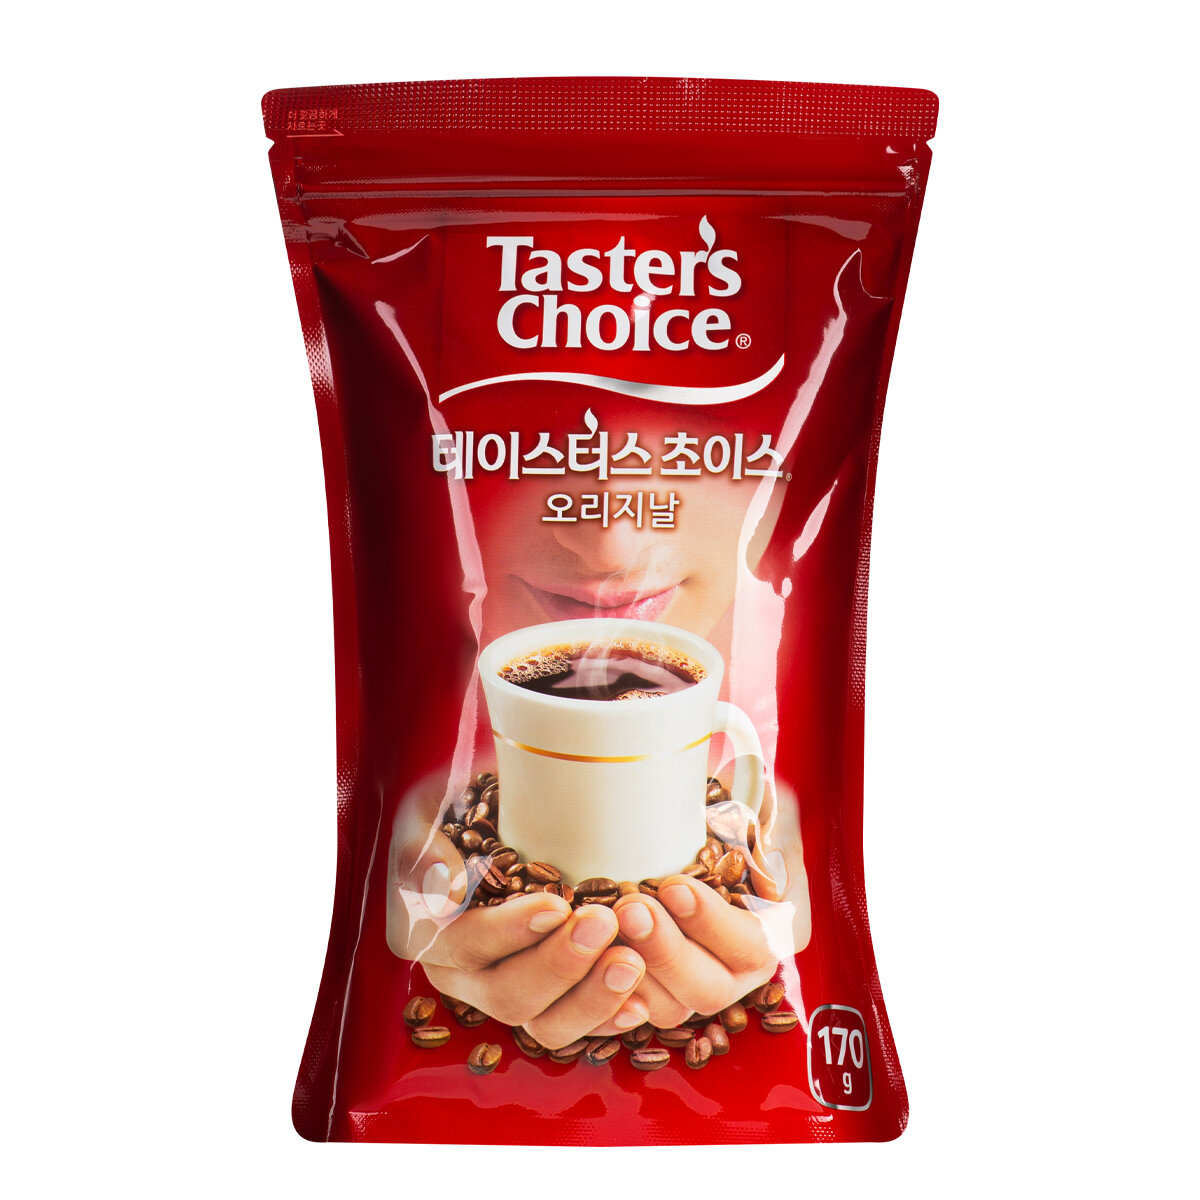 Кофе растворимый Taster's Choice Original, пакет, 170 г